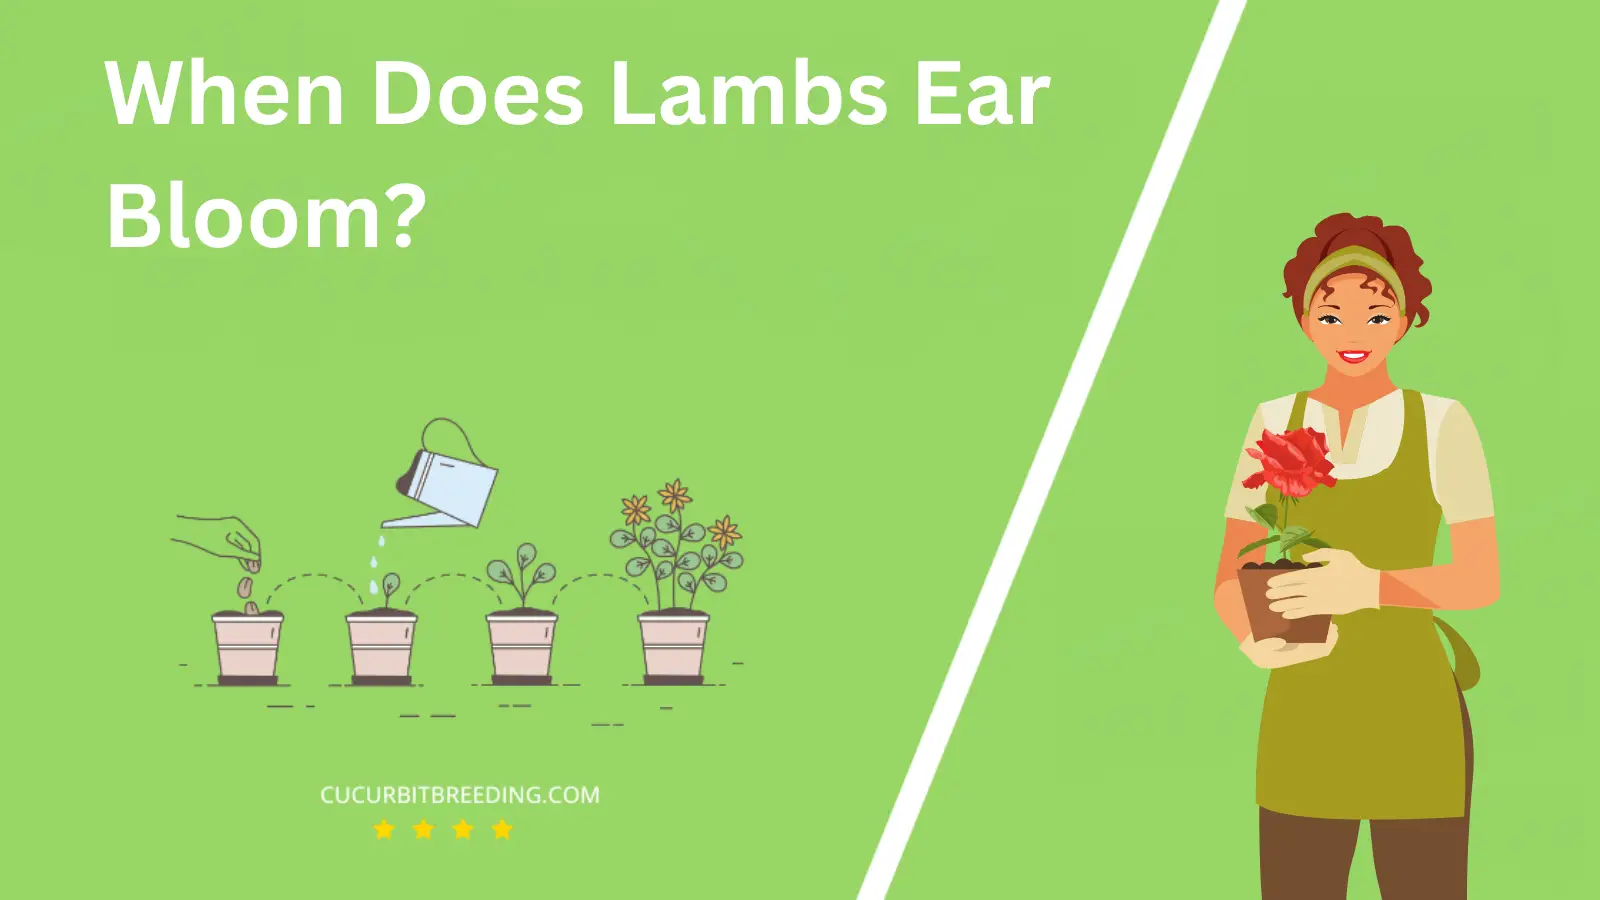 When Does Lambs Ear Bloom?